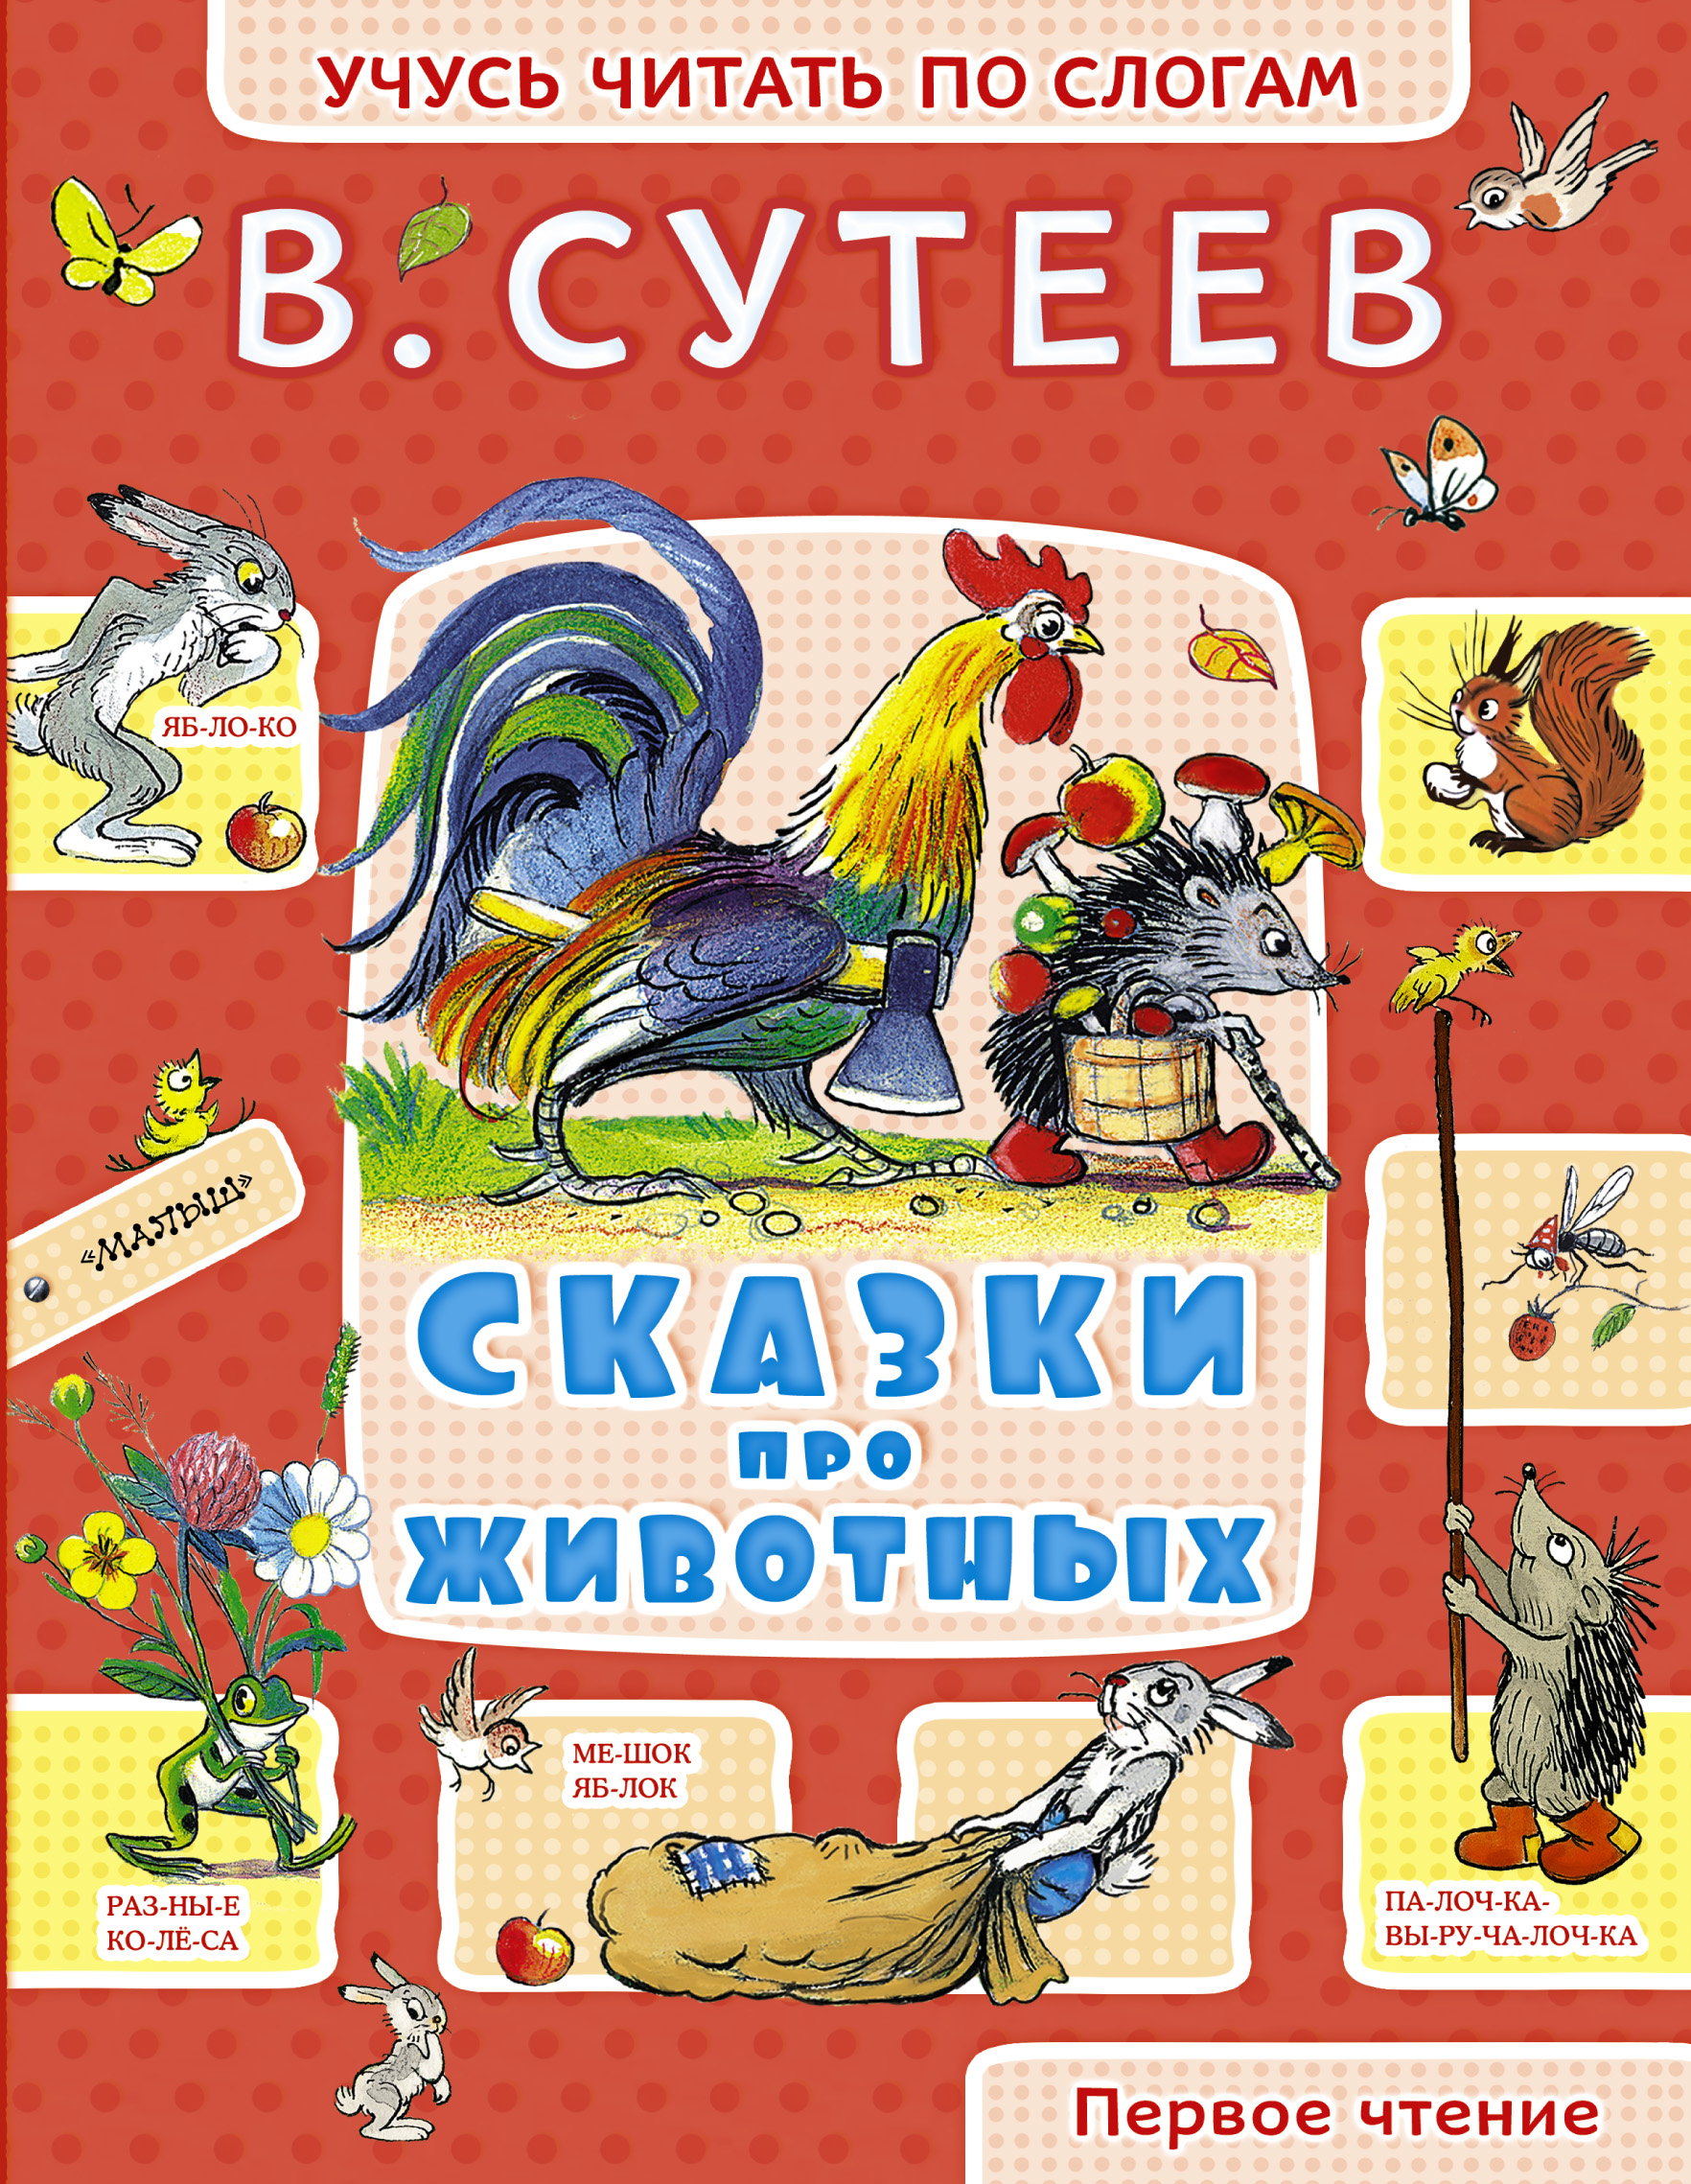 Детские книжки про животных